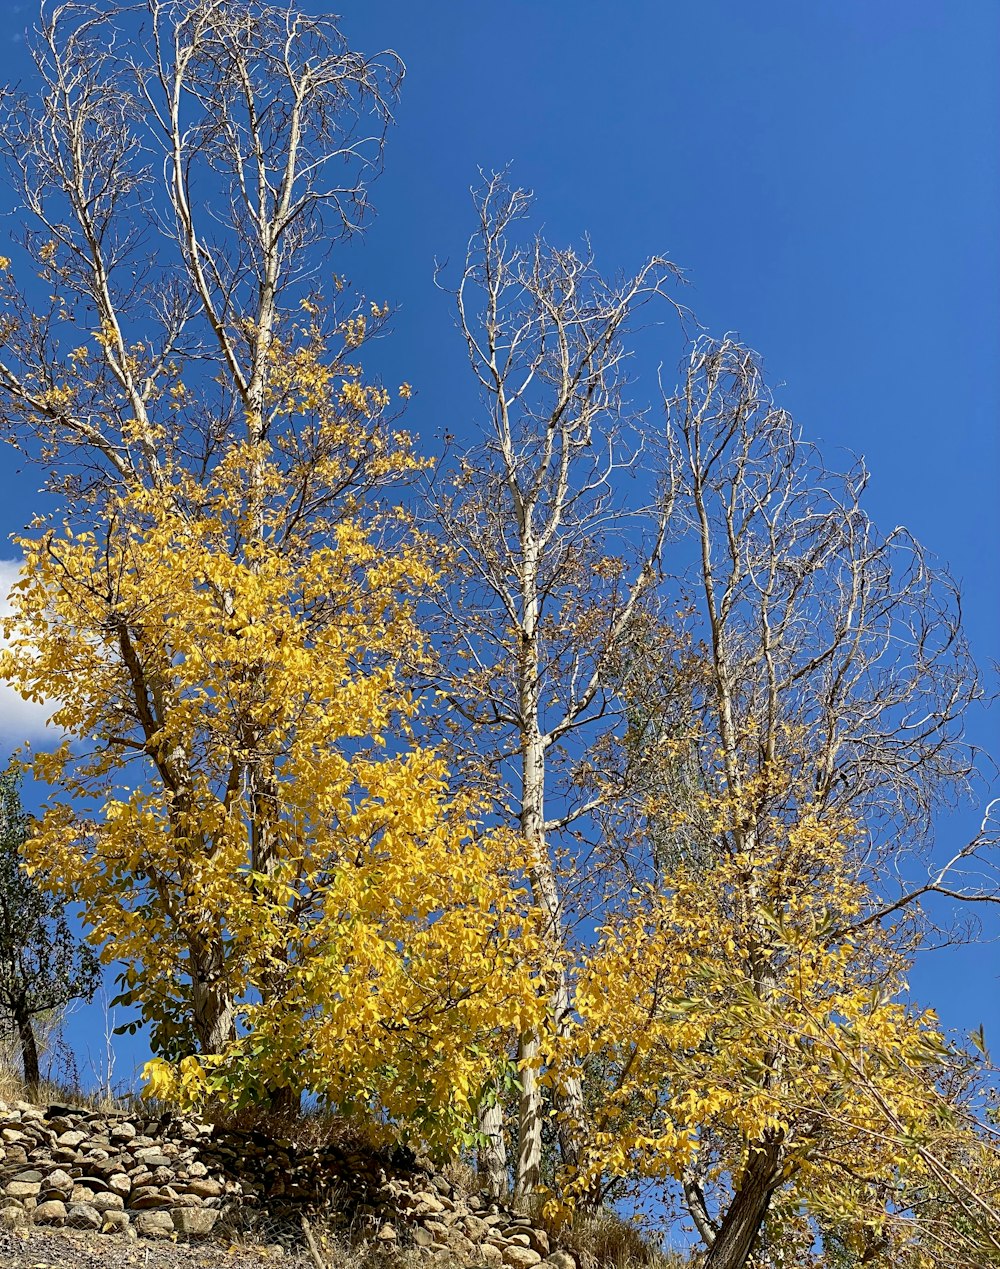 노란 잎사귀가 달린 나무 무리